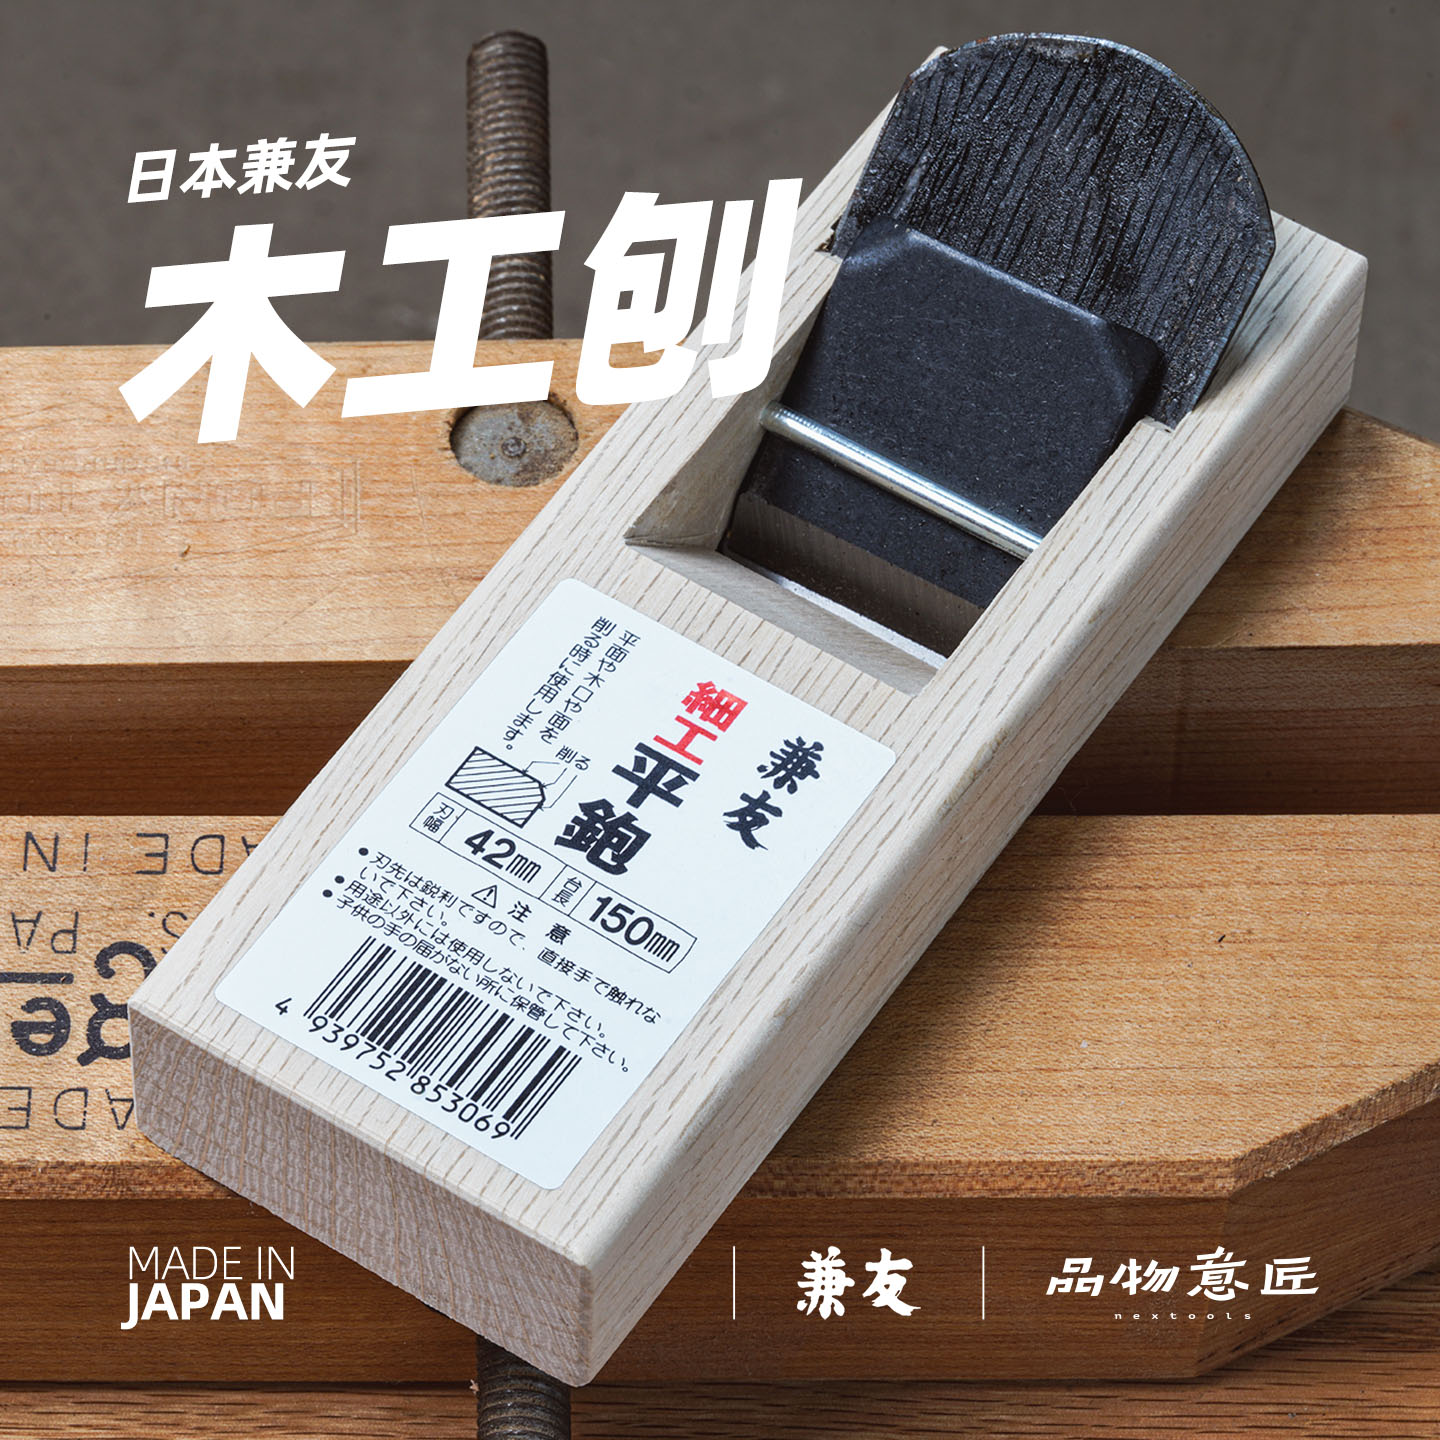 日本兼友拉刨手刨木工刨子迷你手工工具原装进口碳钢DIY 品物意匠